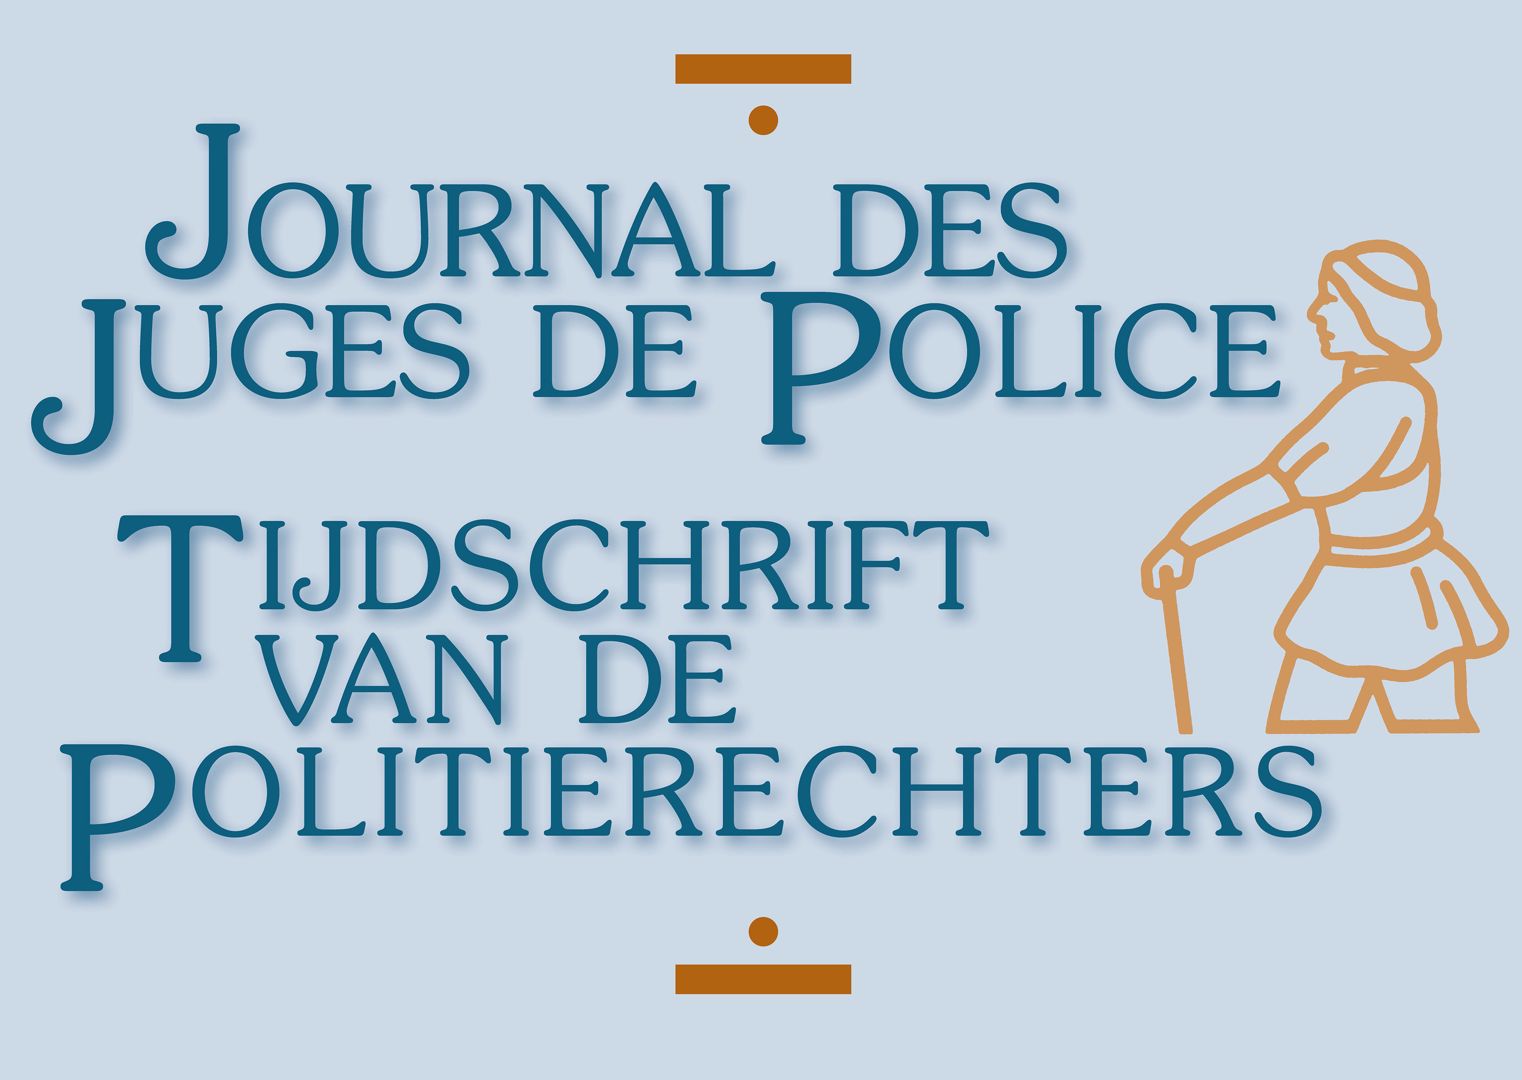 Tijdschrift van de Politierechters